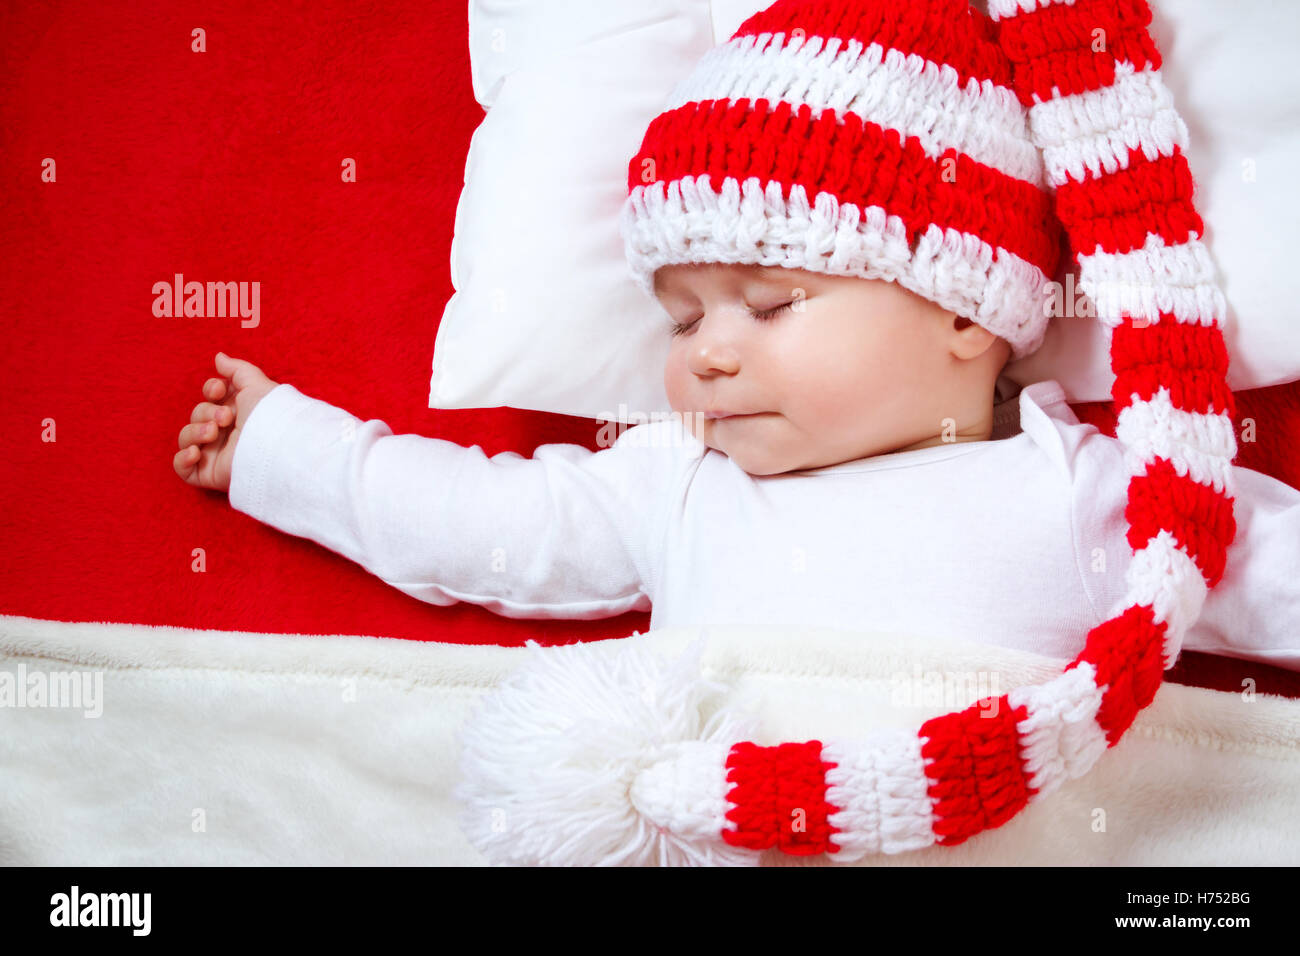 Sleepy baby on red blanket Stock Photo